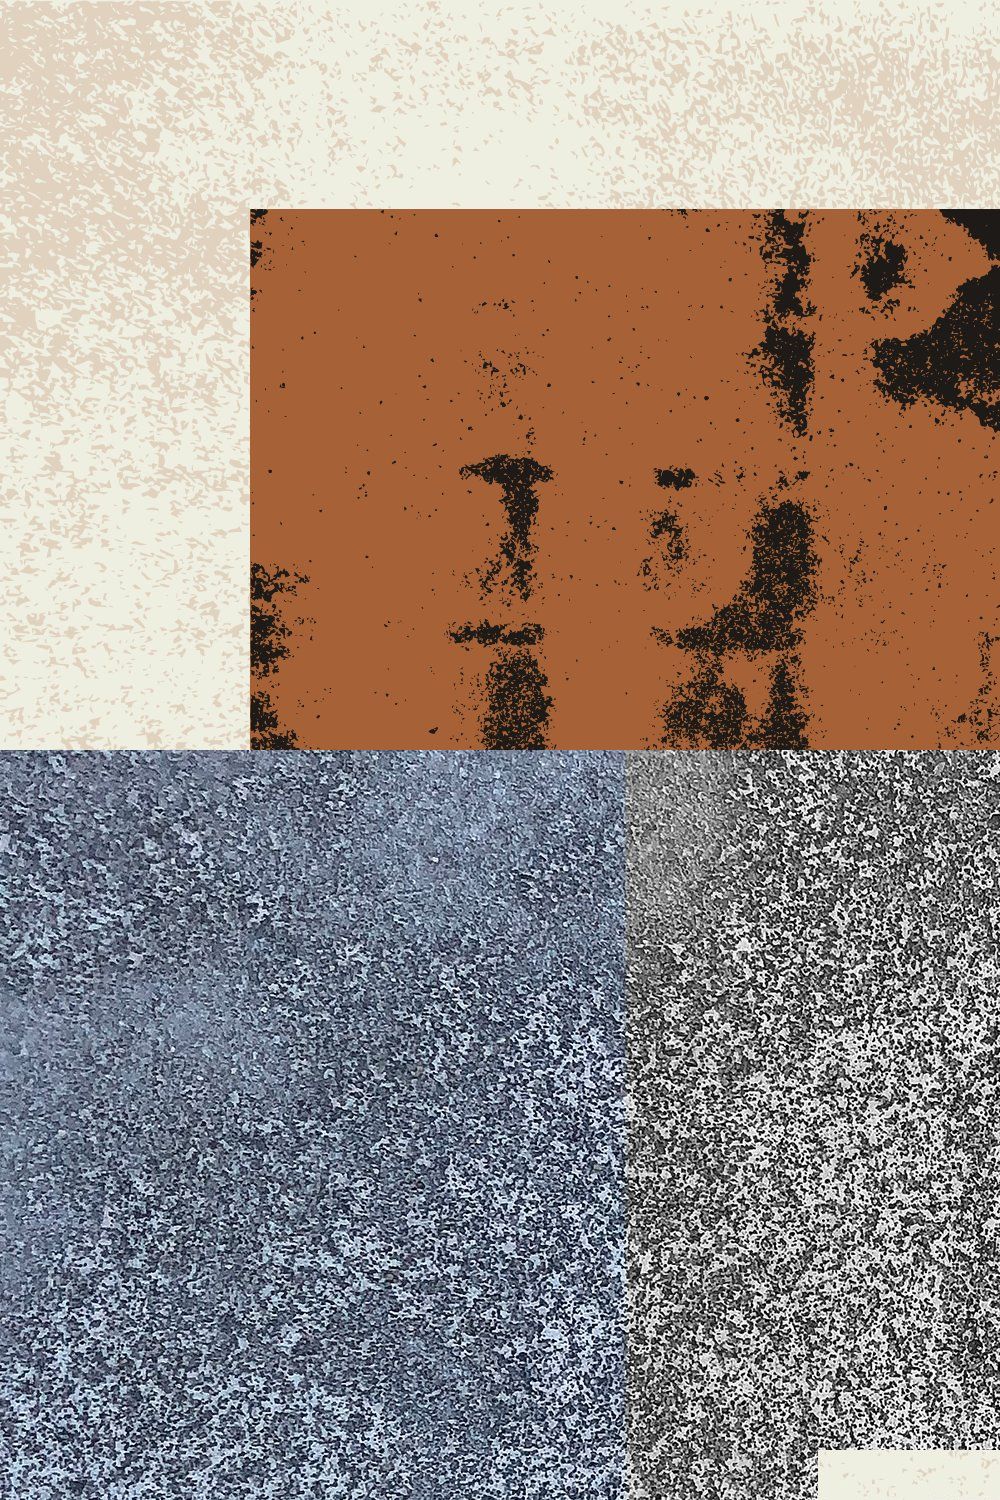 Concrete Textures pinterest preview image.